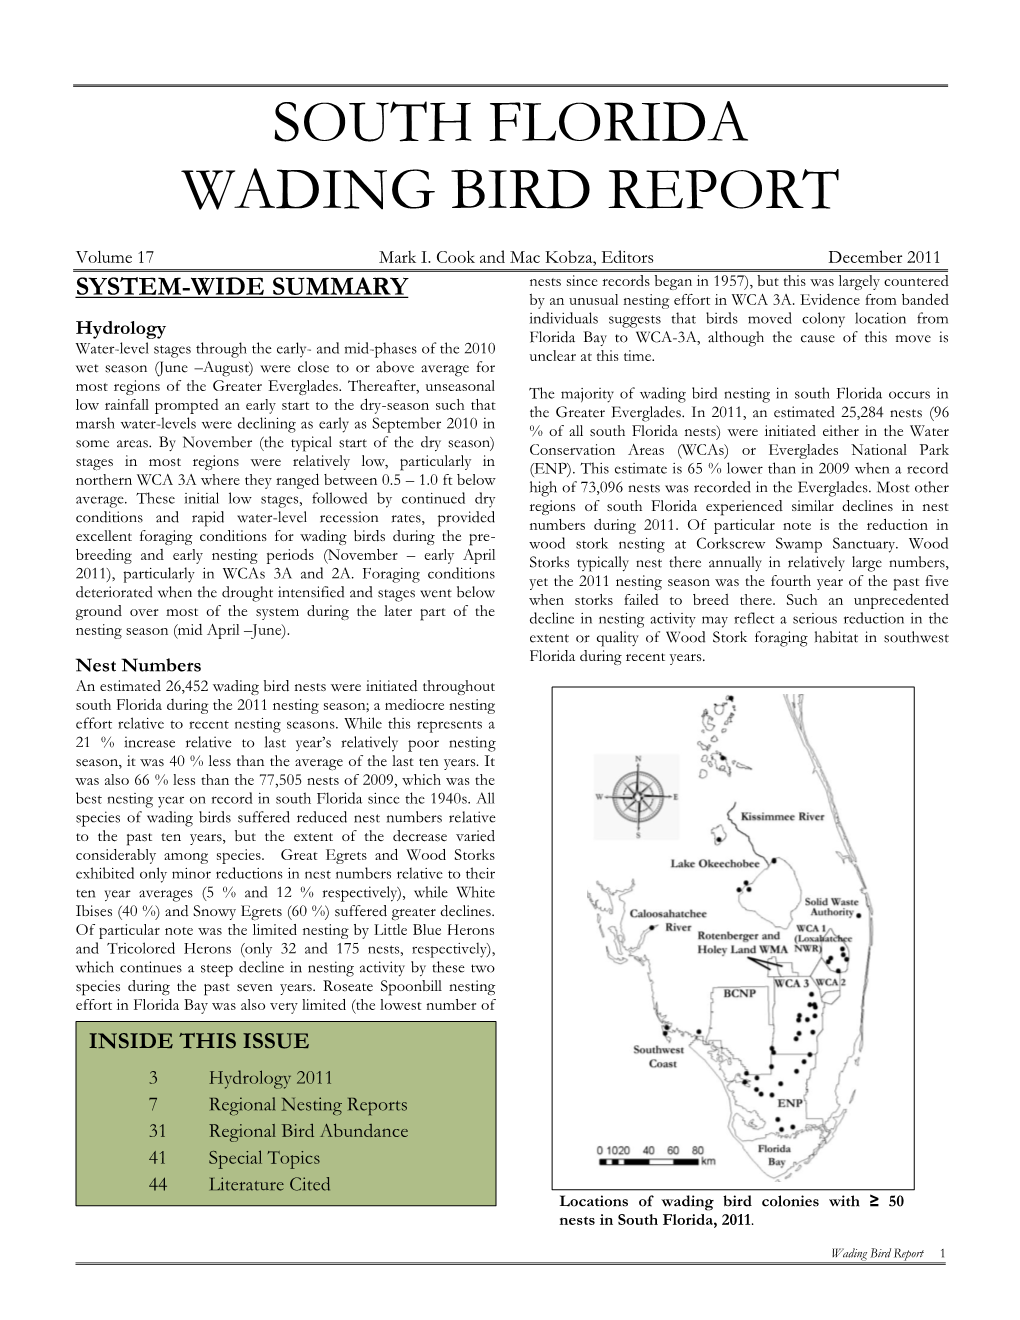 South Florida Wading Bird Report 2011